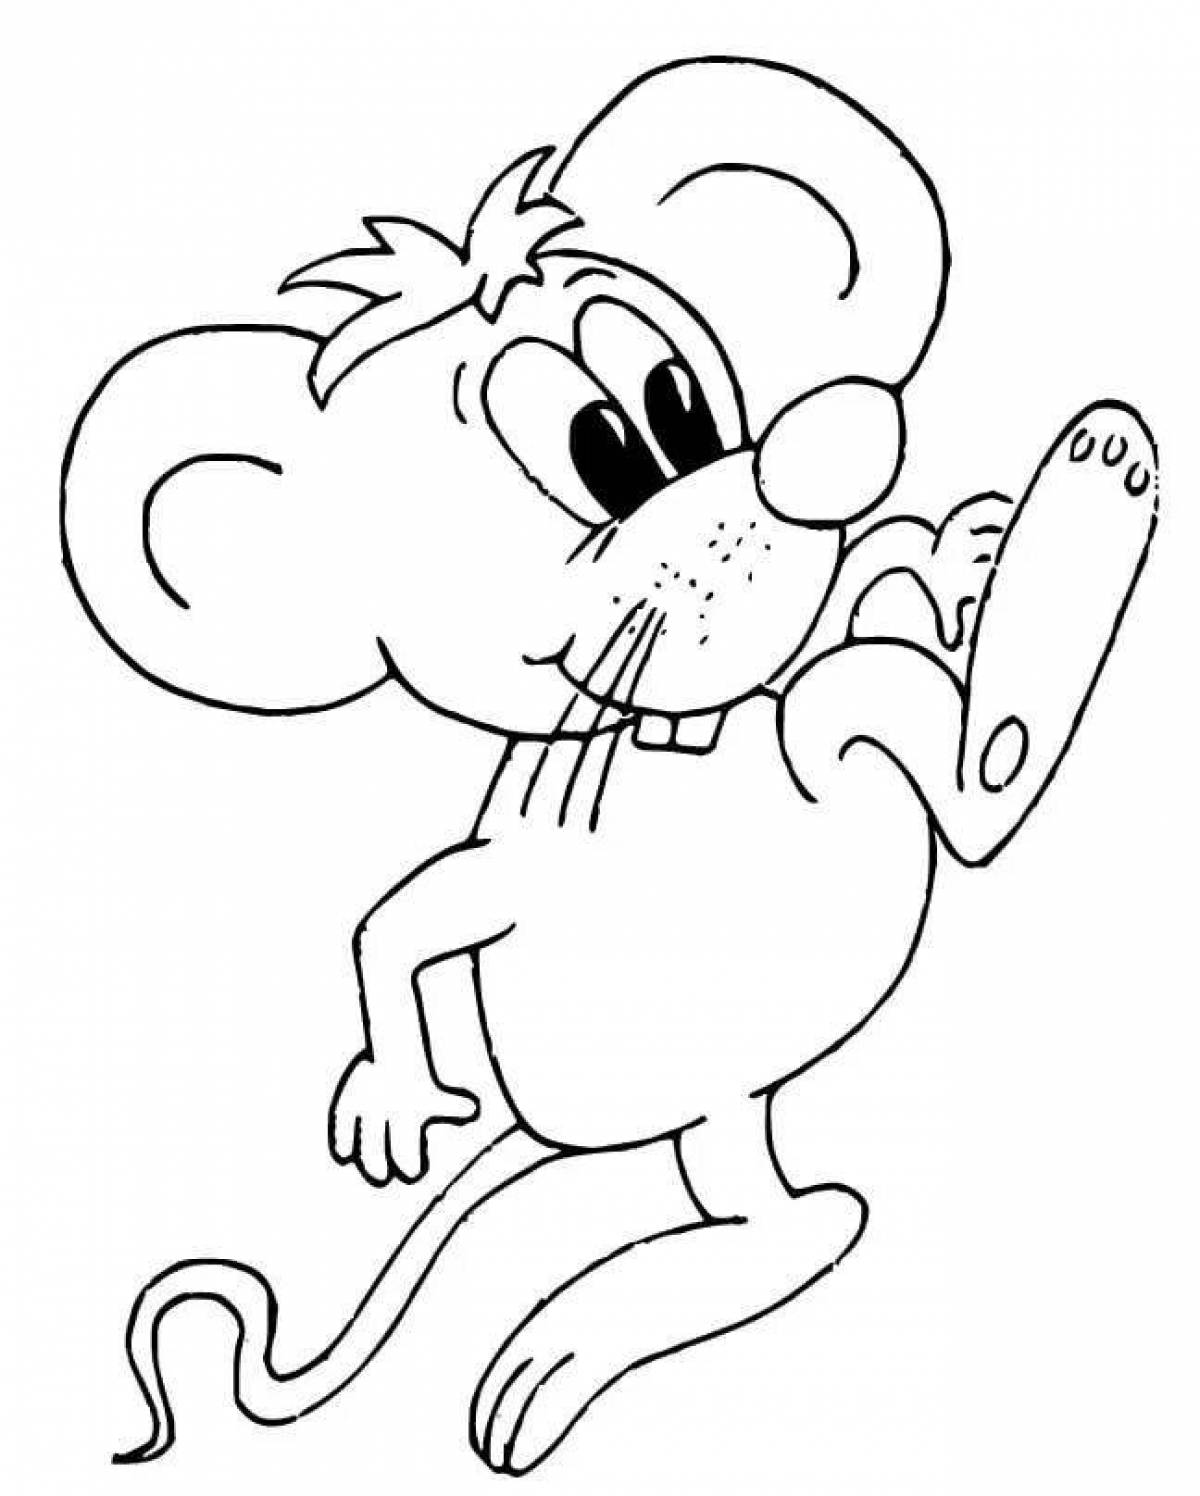 Раскраска мышь распечатать. Раскраска мышка. Раскраска мышонок. Мышь раскраска для детей. Мышонок раскраска для детей.